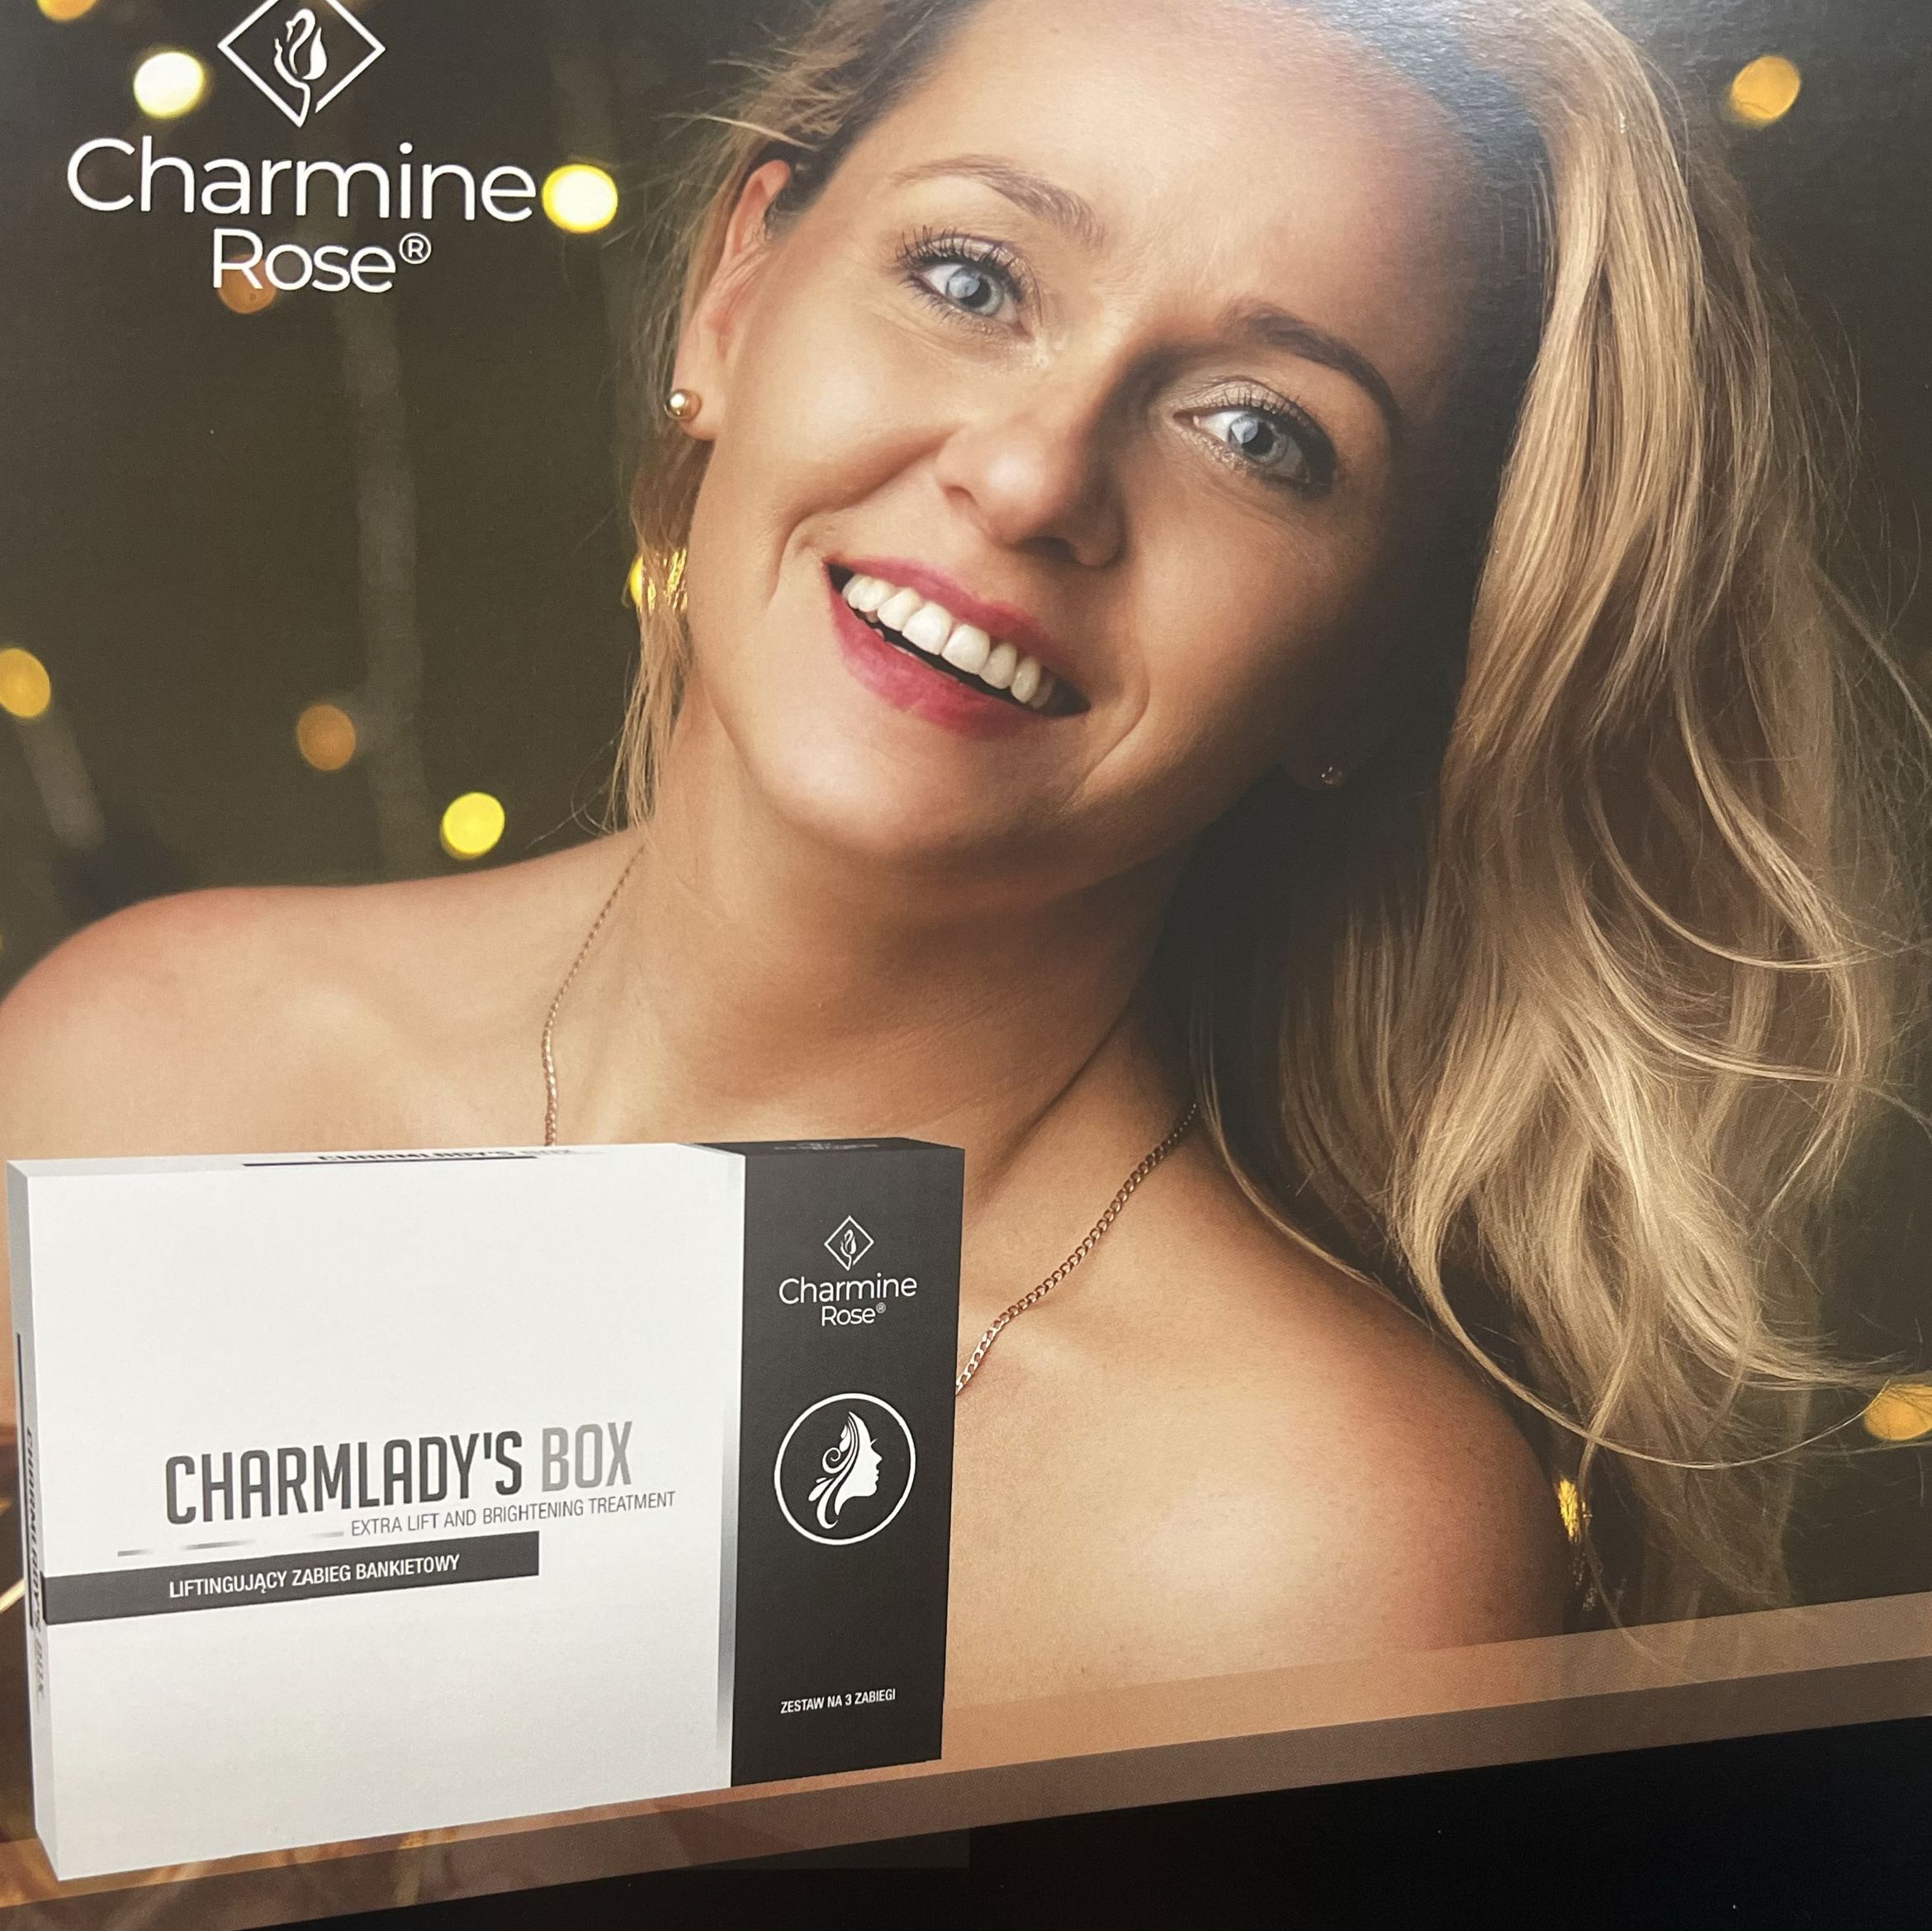 Portfolio usługi Charmladys Box- zabieg bankietowy